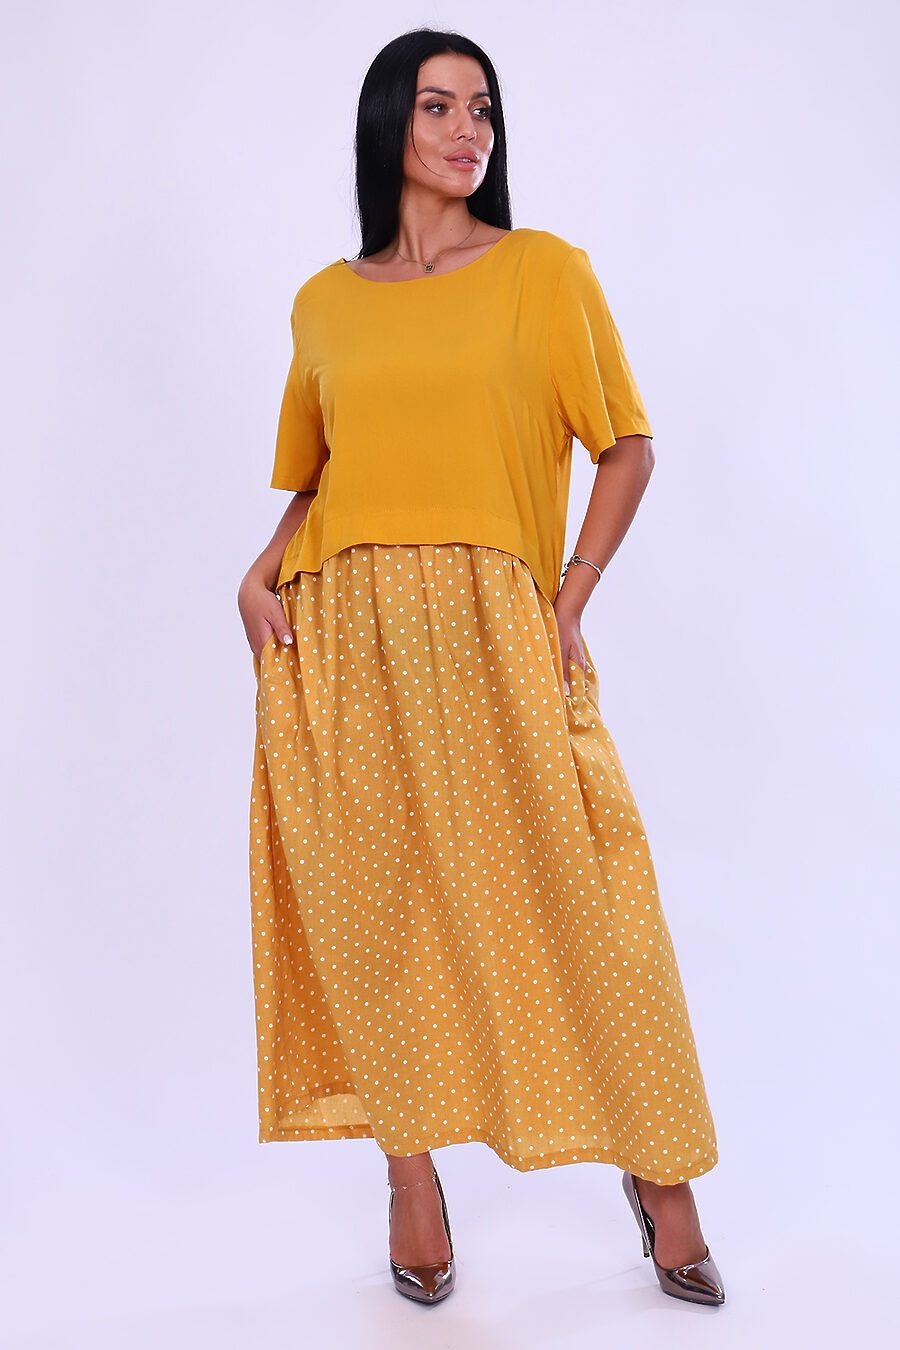 Платье 31685 для женщин НАТАЛИ 796336 купить оптом от производителя. Совместная покупка женской одежды в OptMoyo